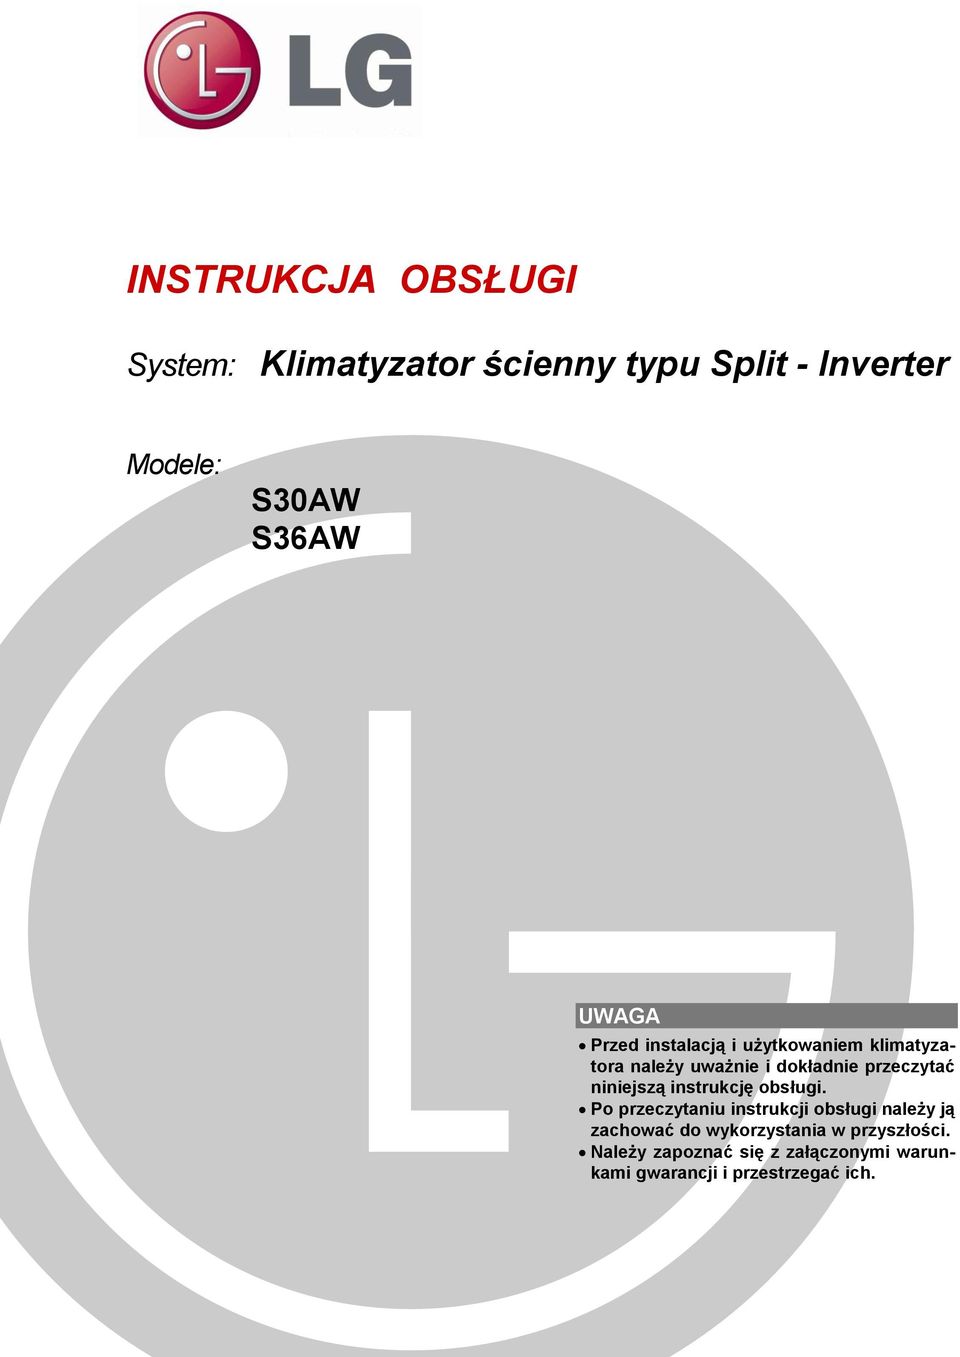 INSTRUKCJA OBSŁUGI. System: Klimatyzator ścienny typu Split - Inverter.  Modele: S30AW S36AW UWAGA - PDF Free Download